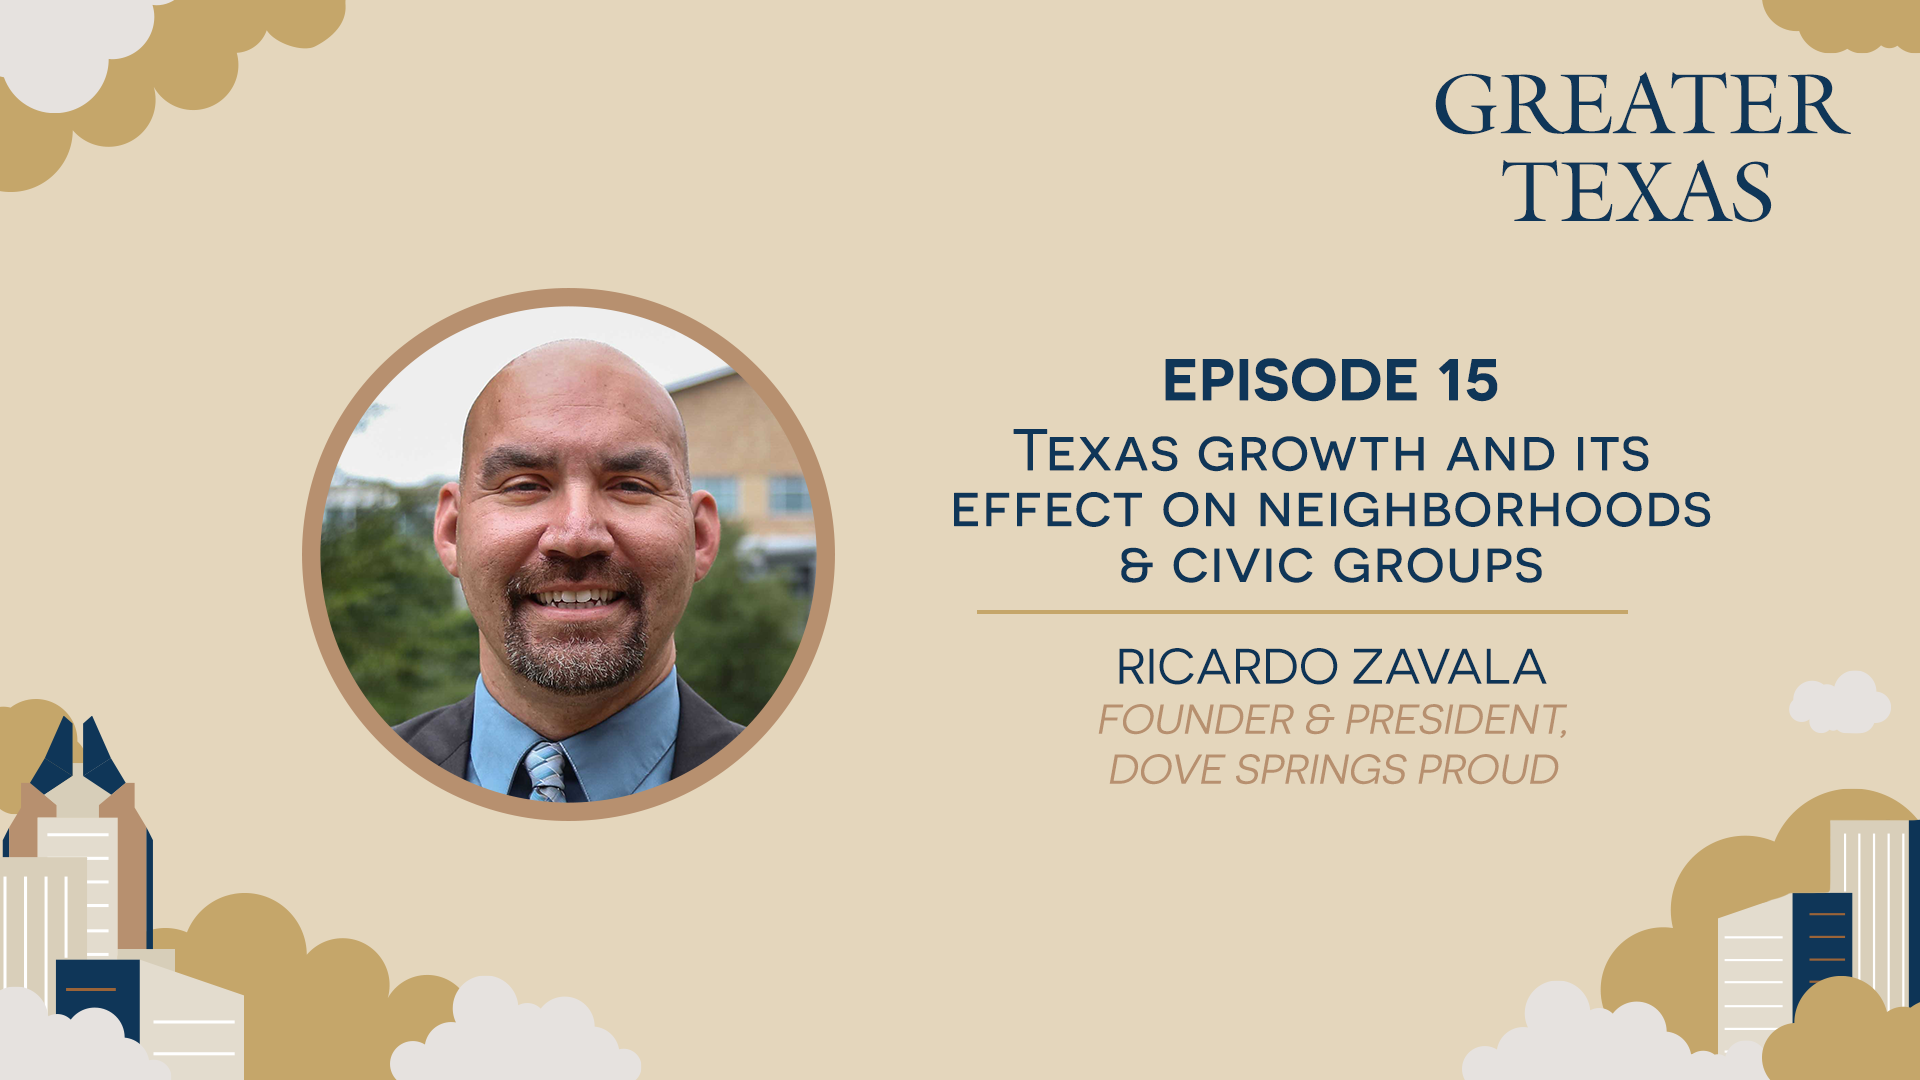 Podcast interview with Ricardo Zavala